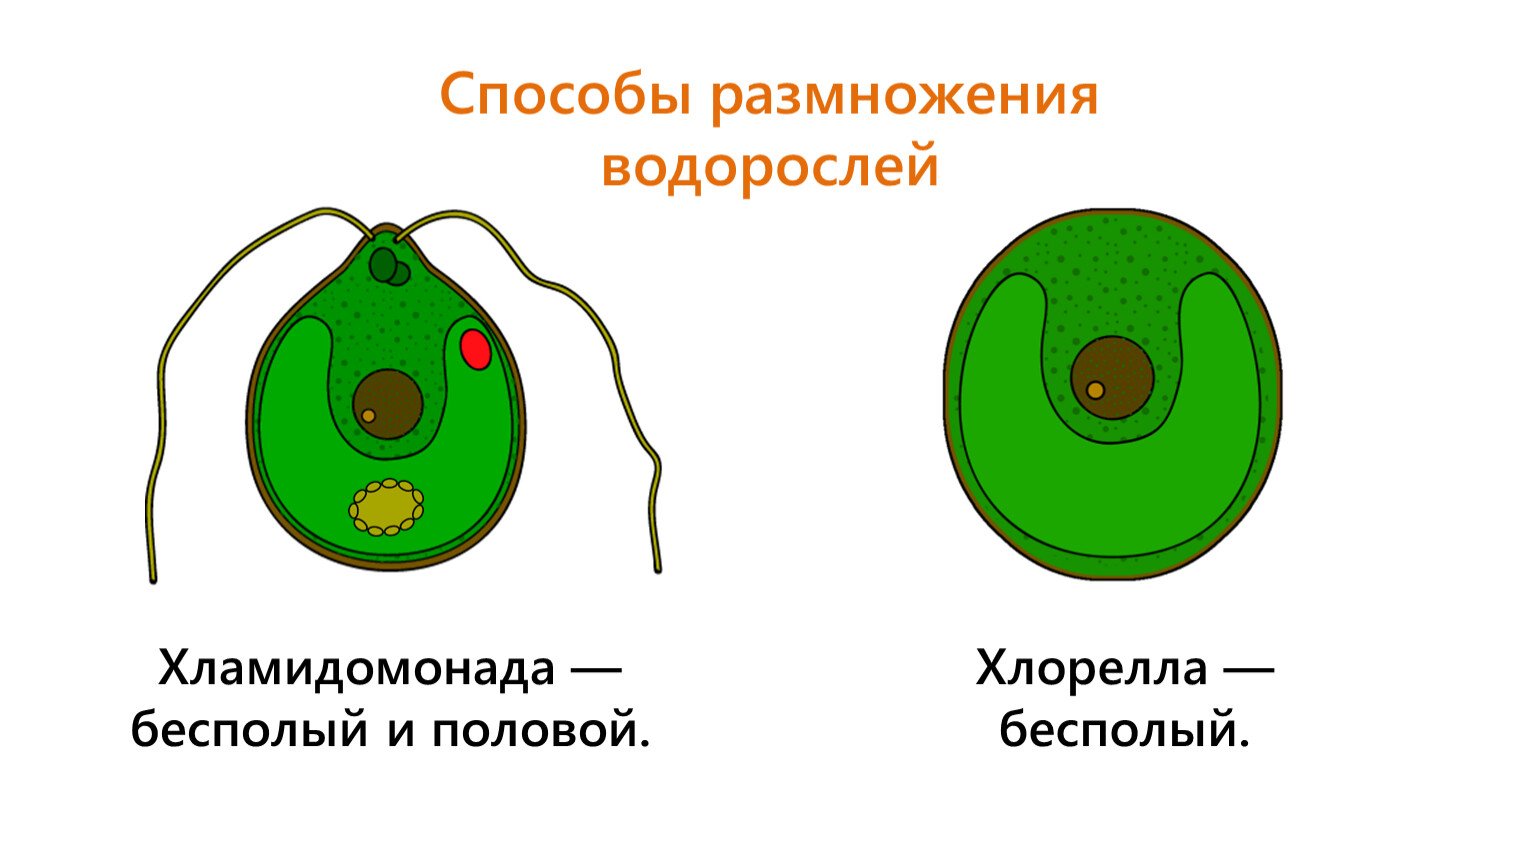 Строение водоросли хламидомонады. Хлорелла водоросль строение. Одноклеточная водоросль хлорелла строение. Одноклеточная водоросль хламидомонада.